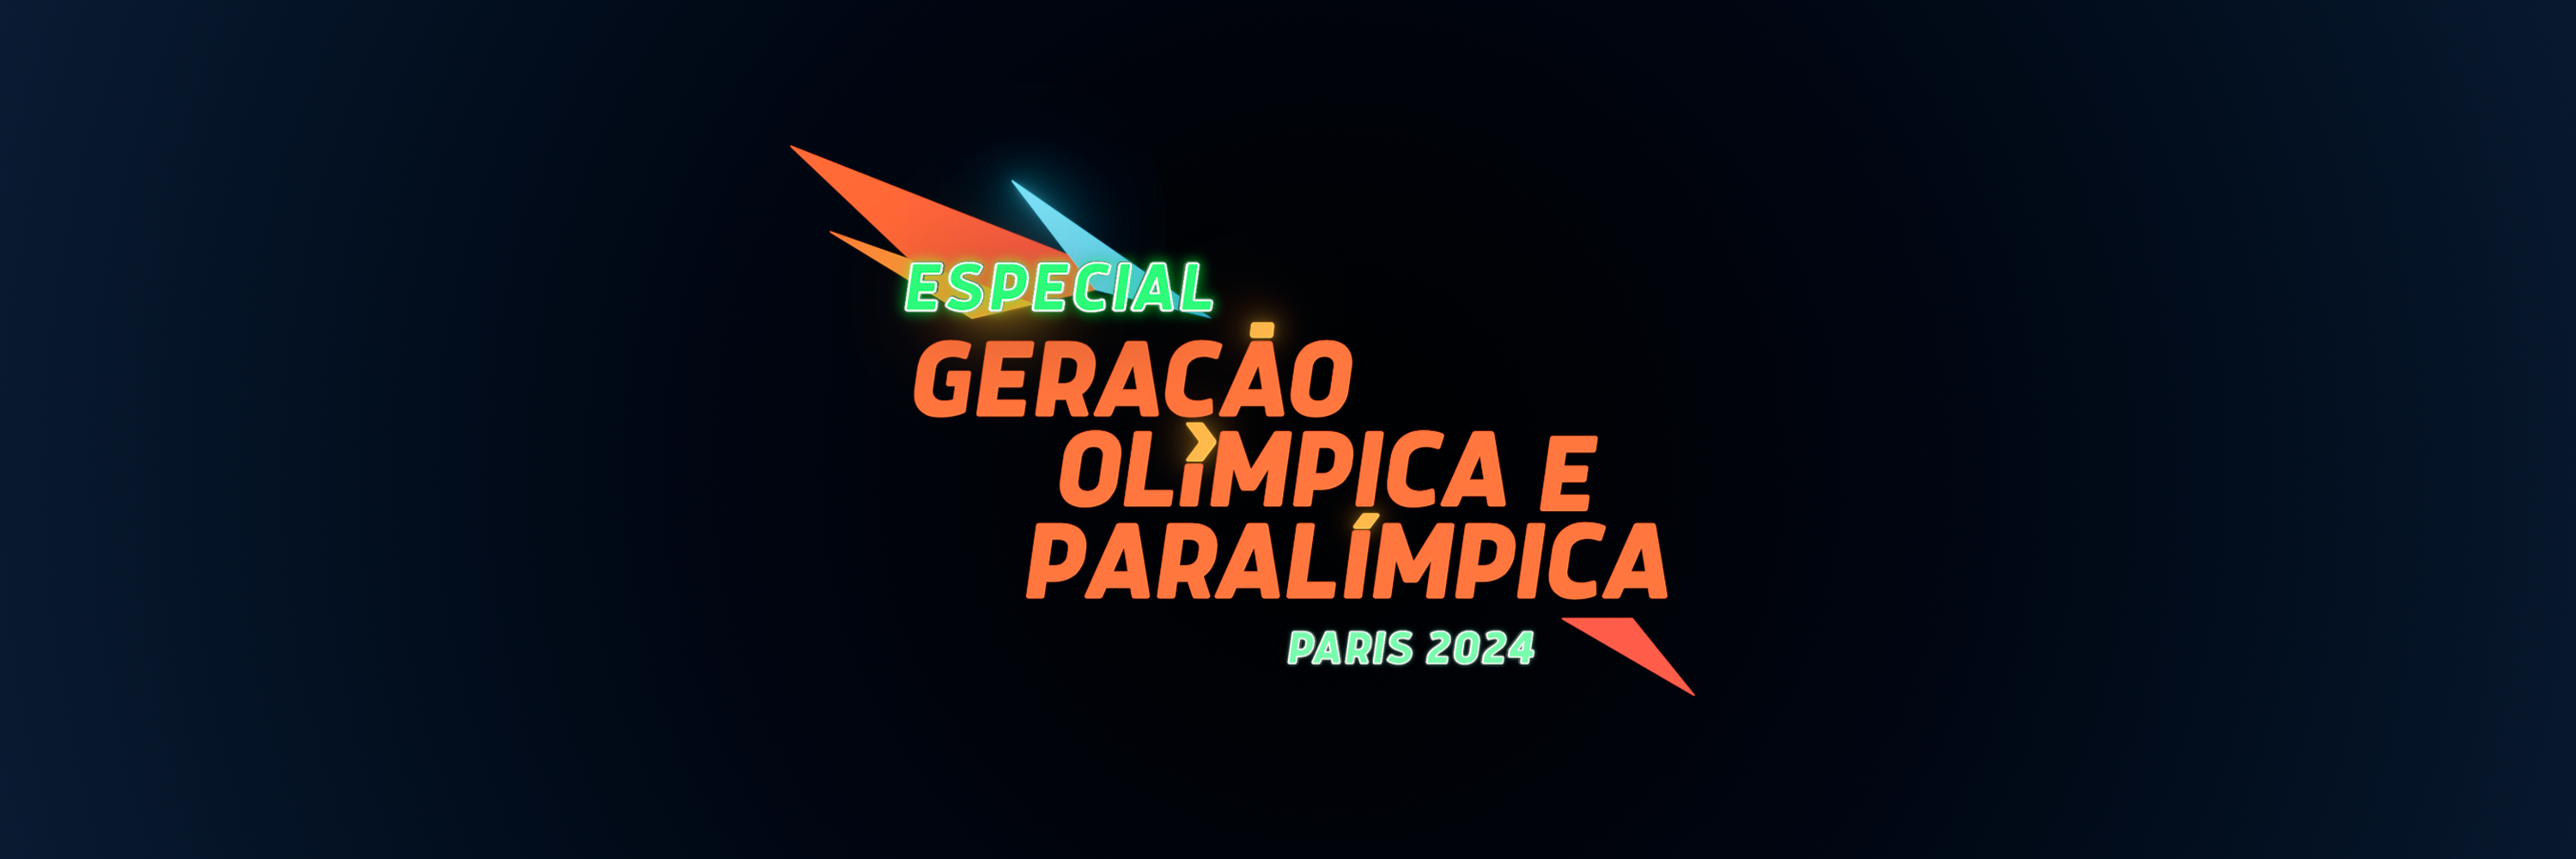 Geração Olímpica e Paralímpica Paris 2024